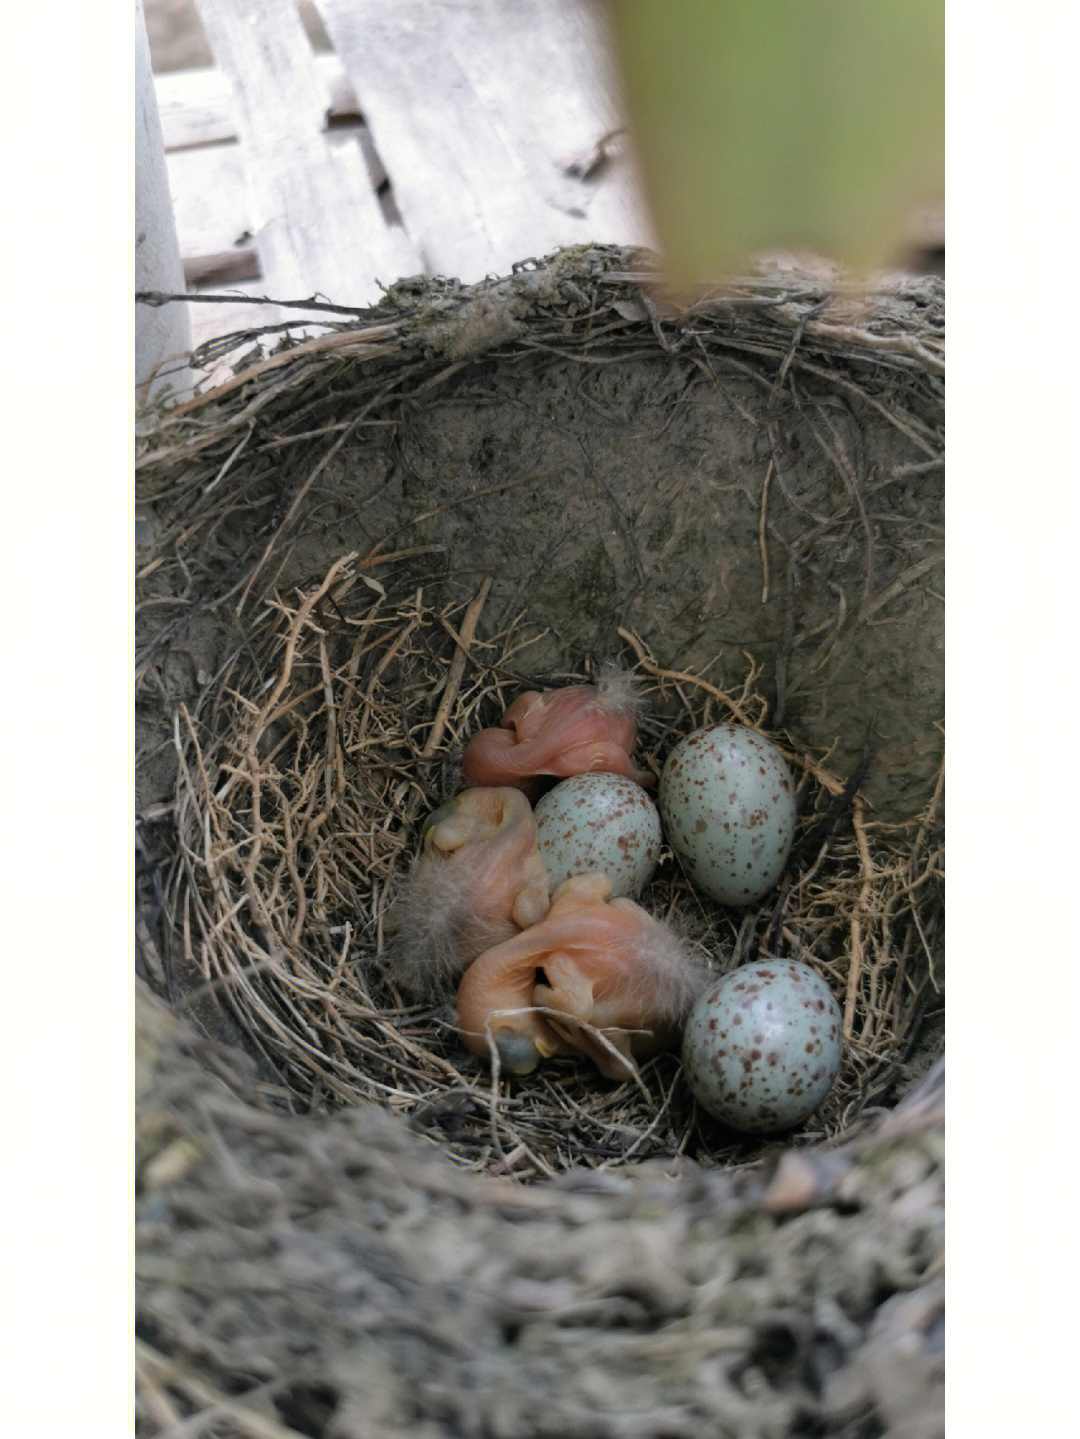 6月18日发现有一窝鸟蛋,隔几天去看看,孵出来三只,长长挺快,鸟妈妈